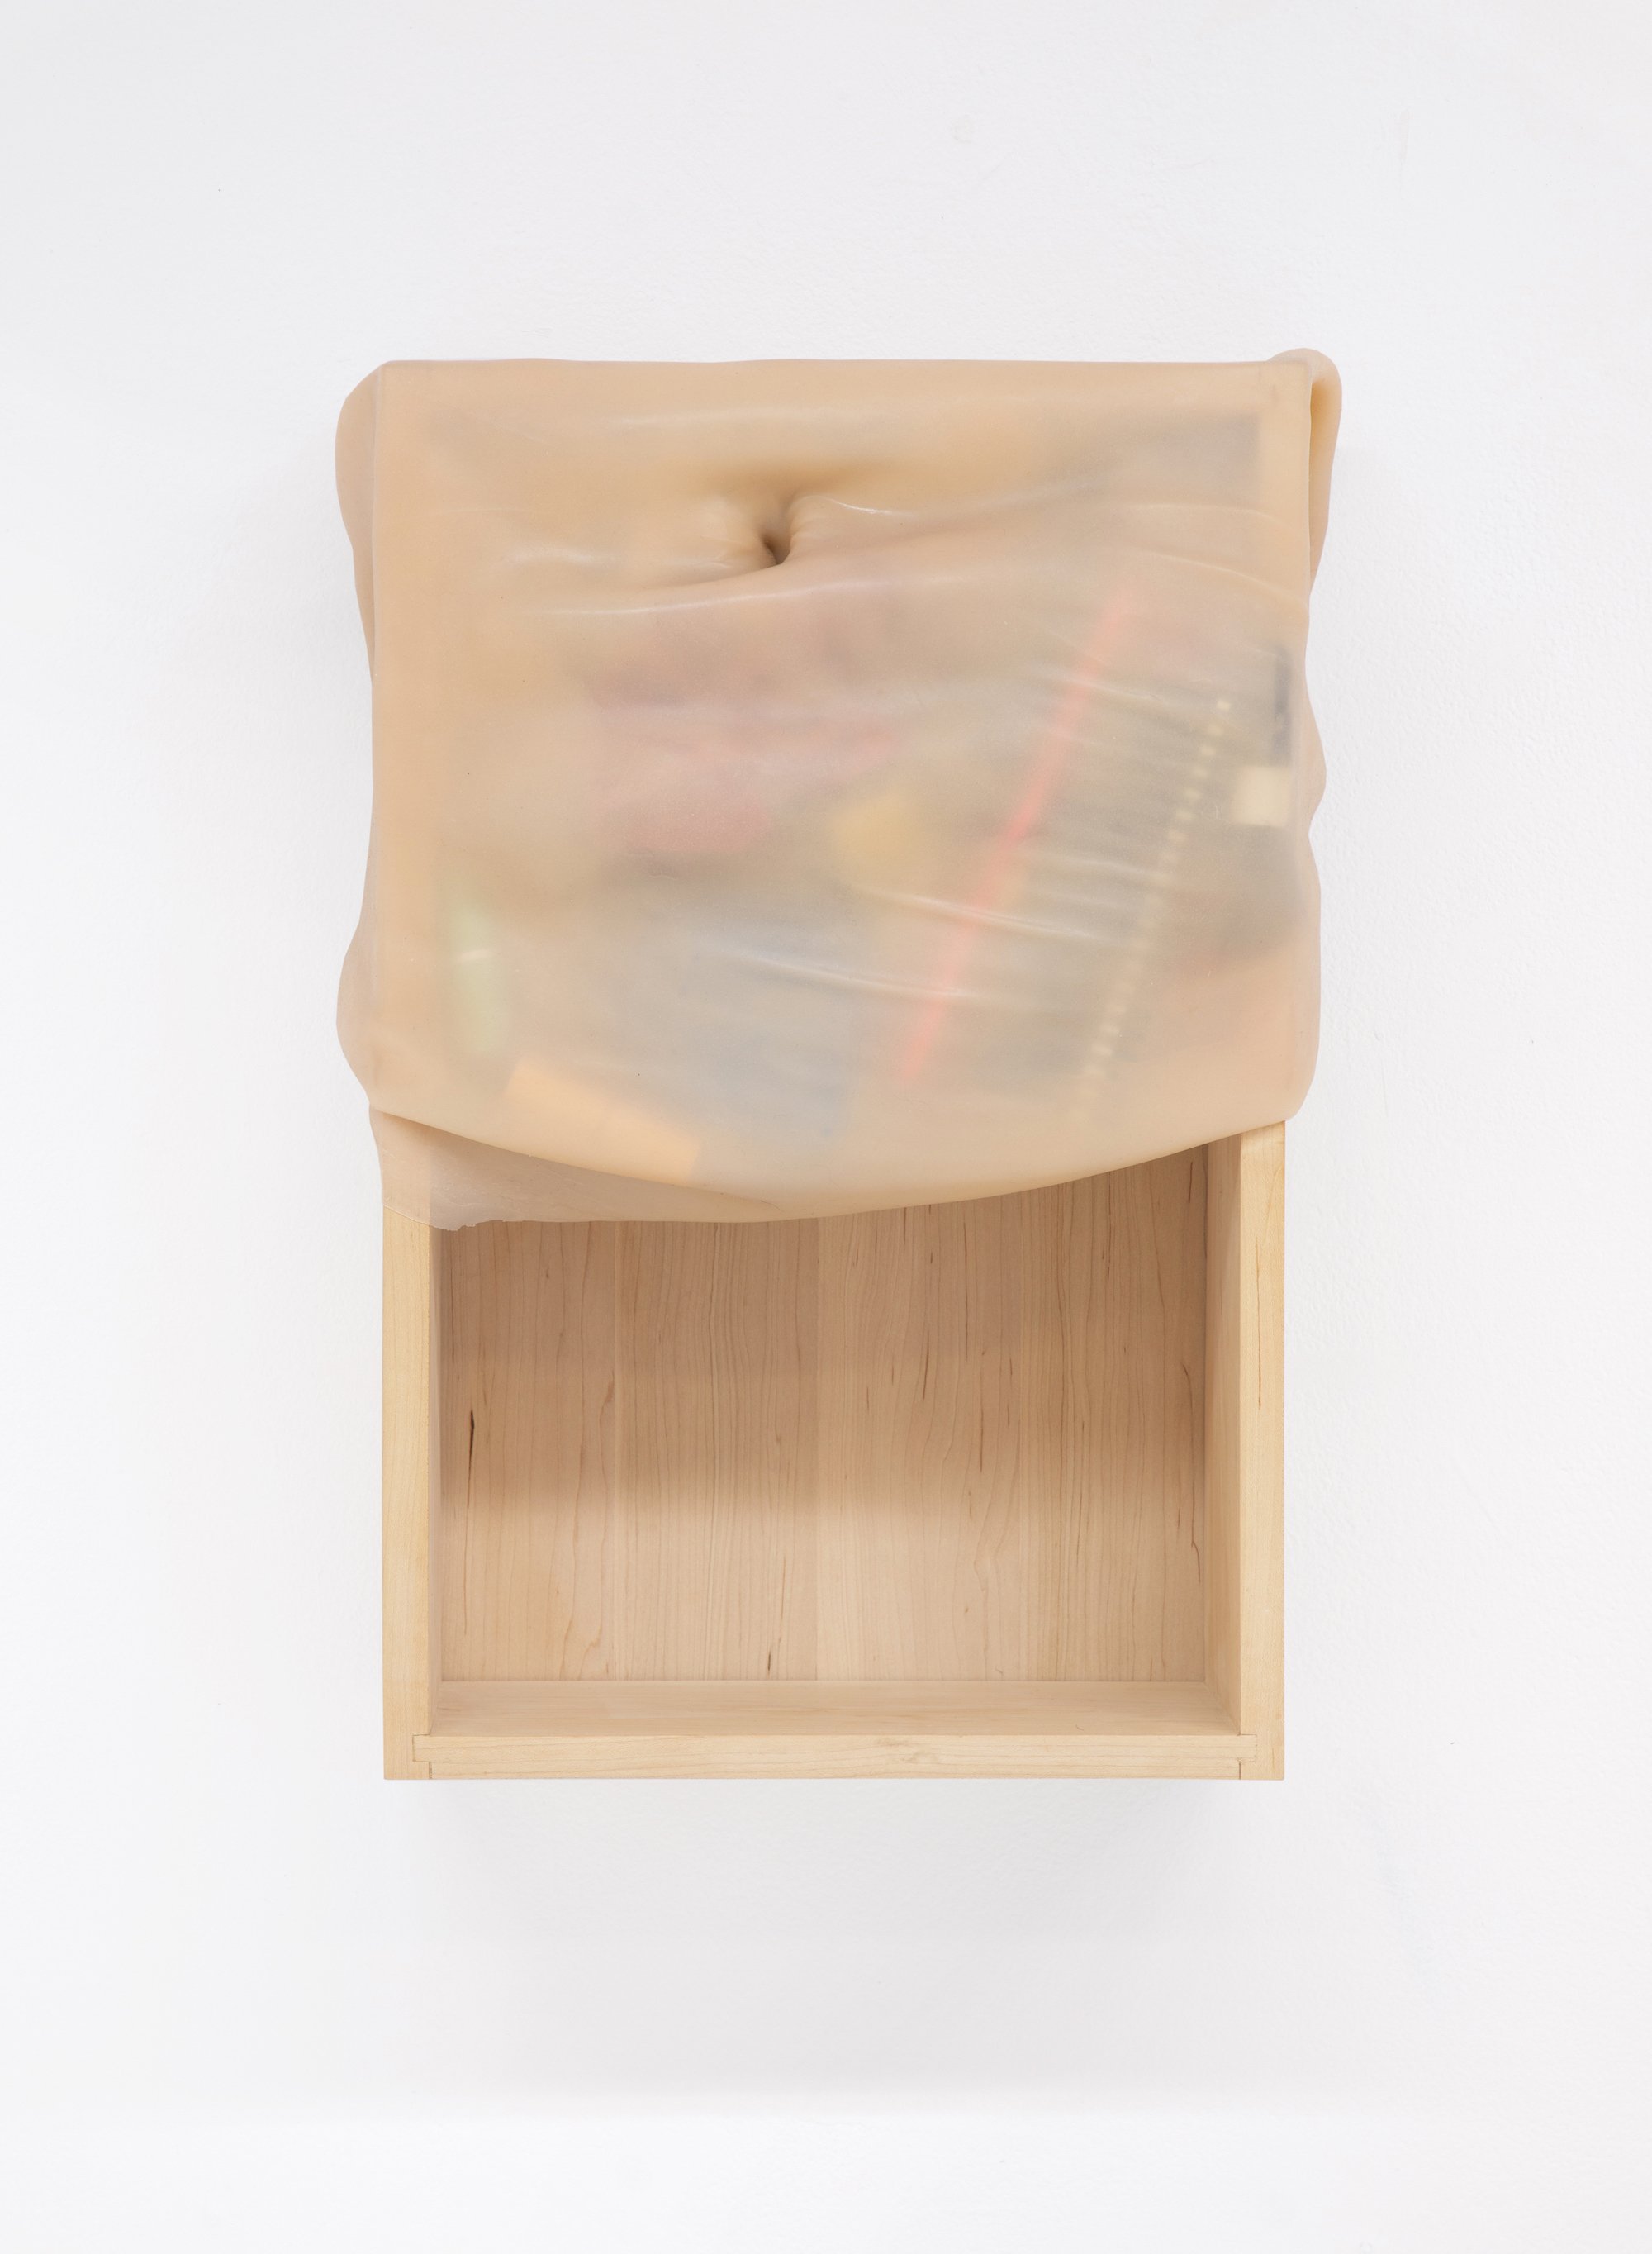   Medicine cabinet  , 2020, Silicone latex, wood, found objects, 13” W x 20”H x 7” D, Photo Credits: Alberto Porro 